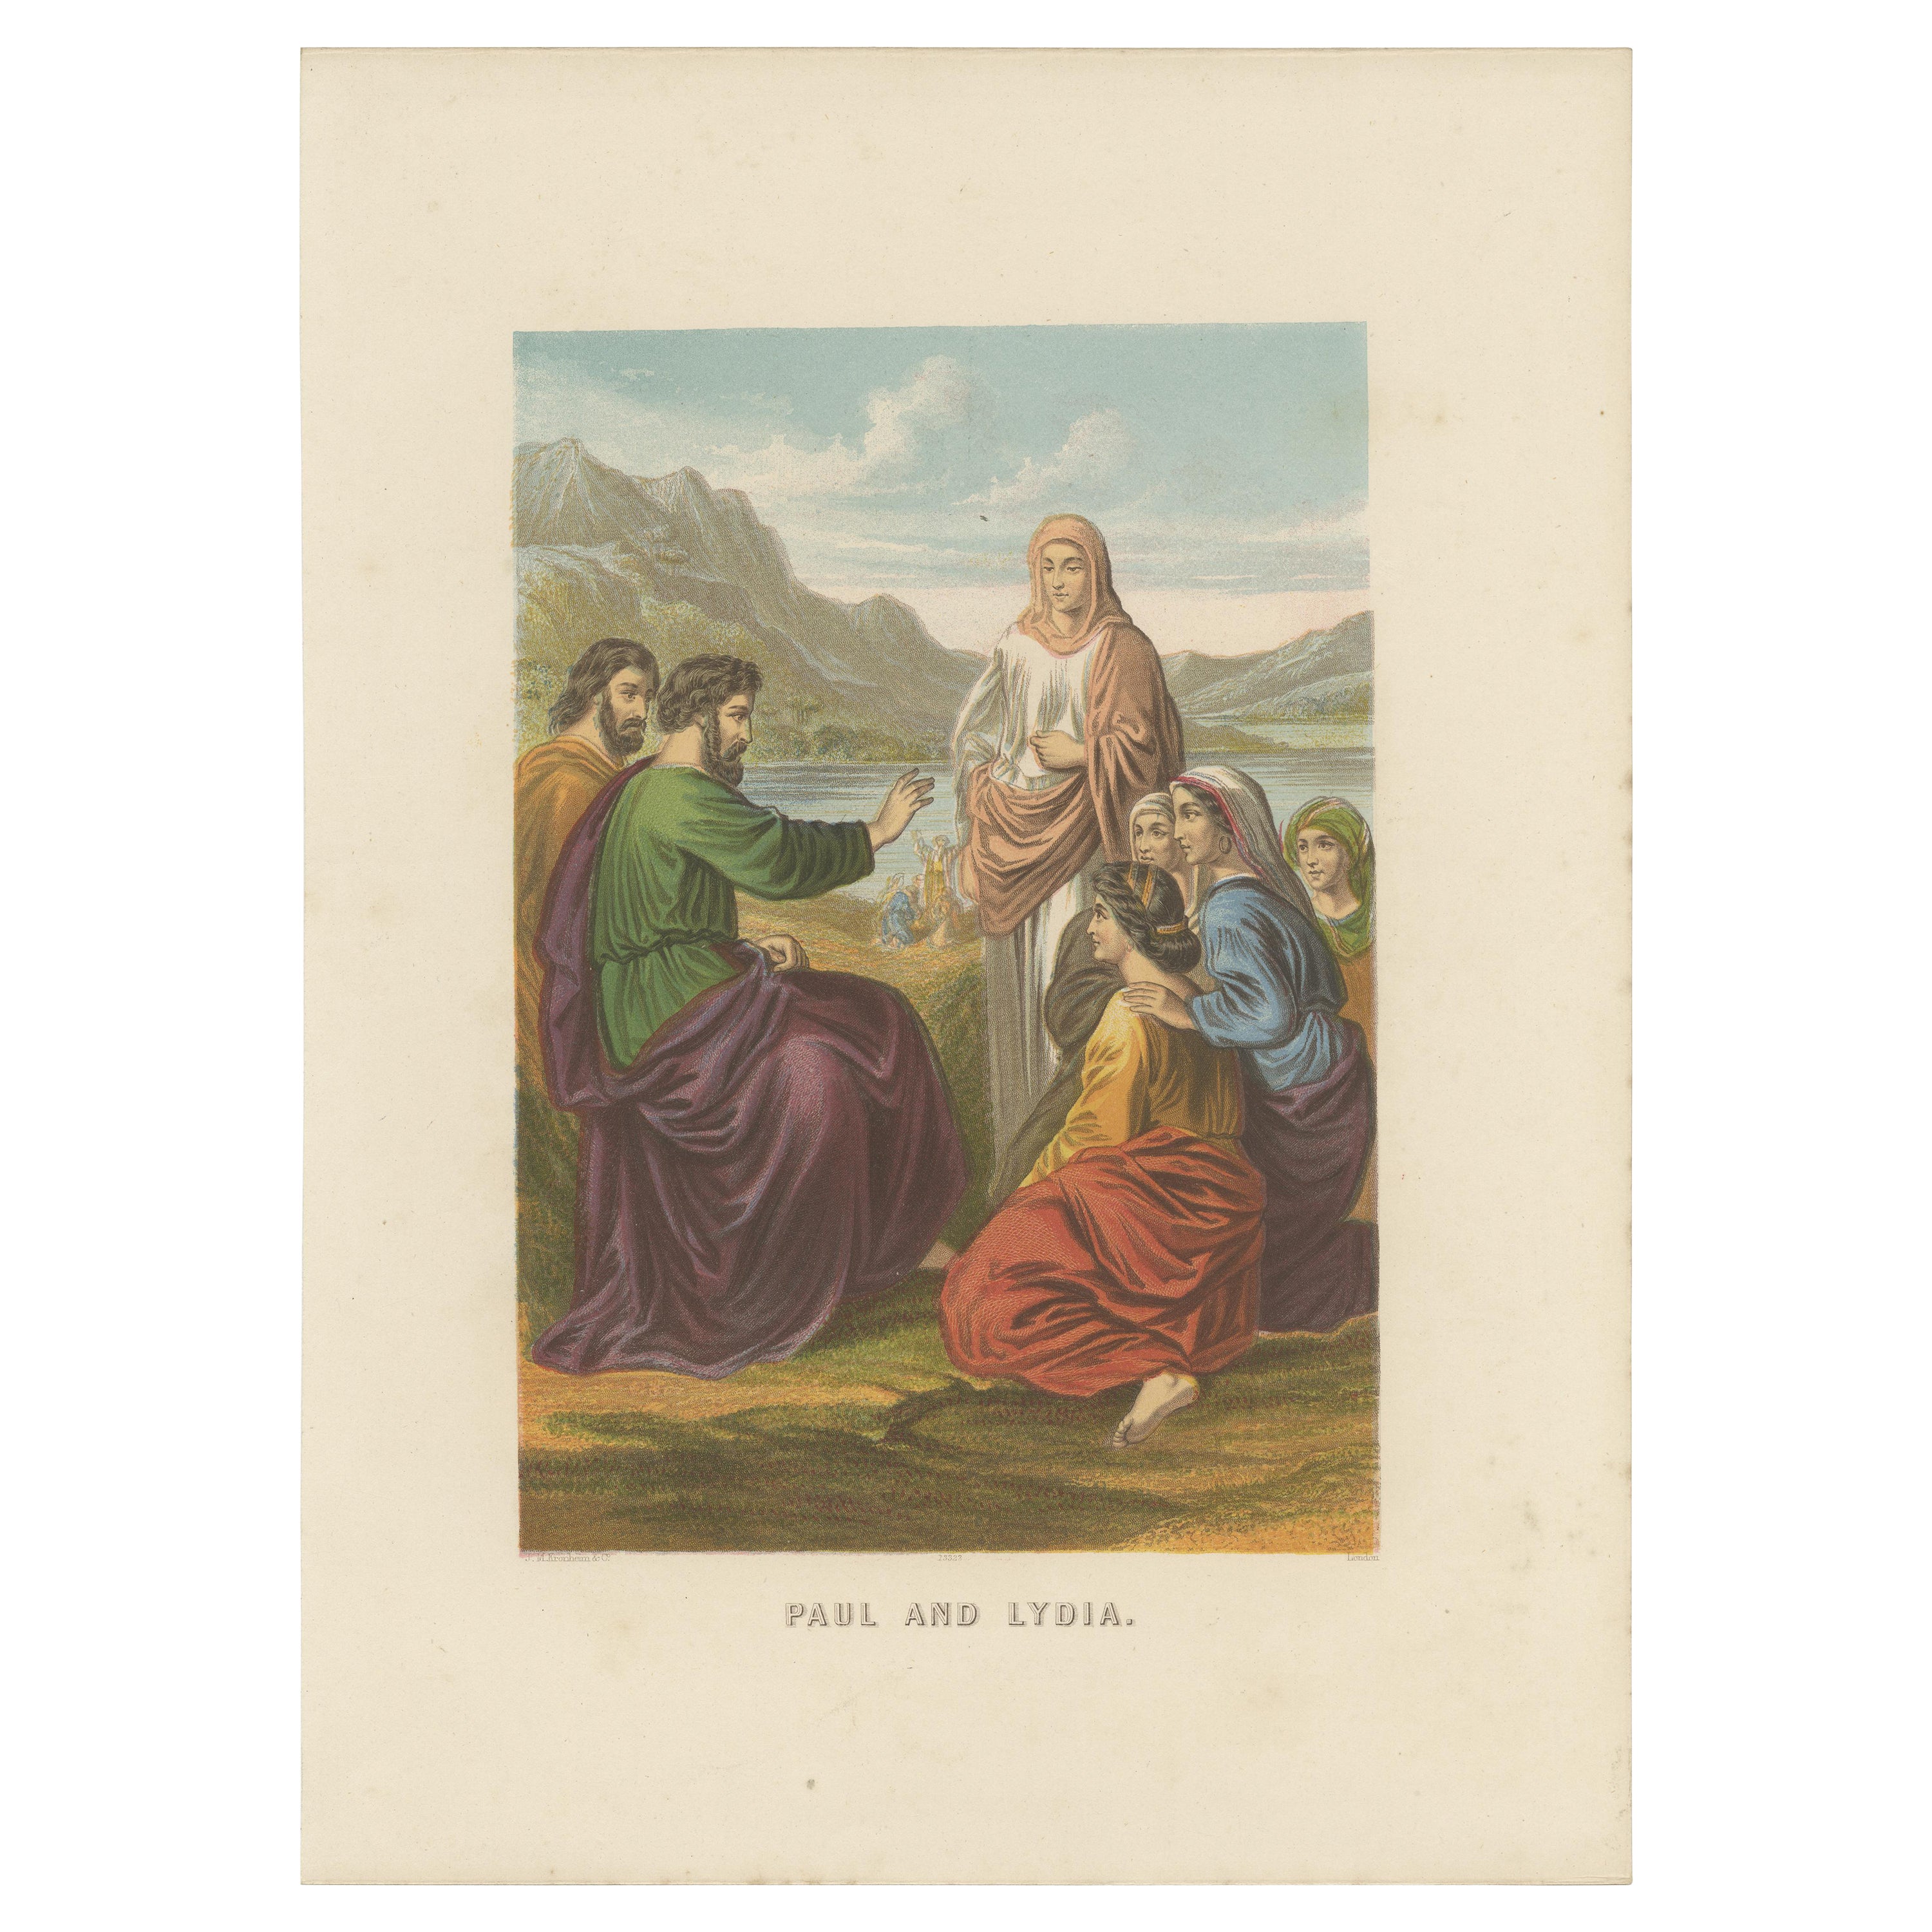 Impression ancienne de la Bible de Paul et Lydia par Kronheim, vers 1860